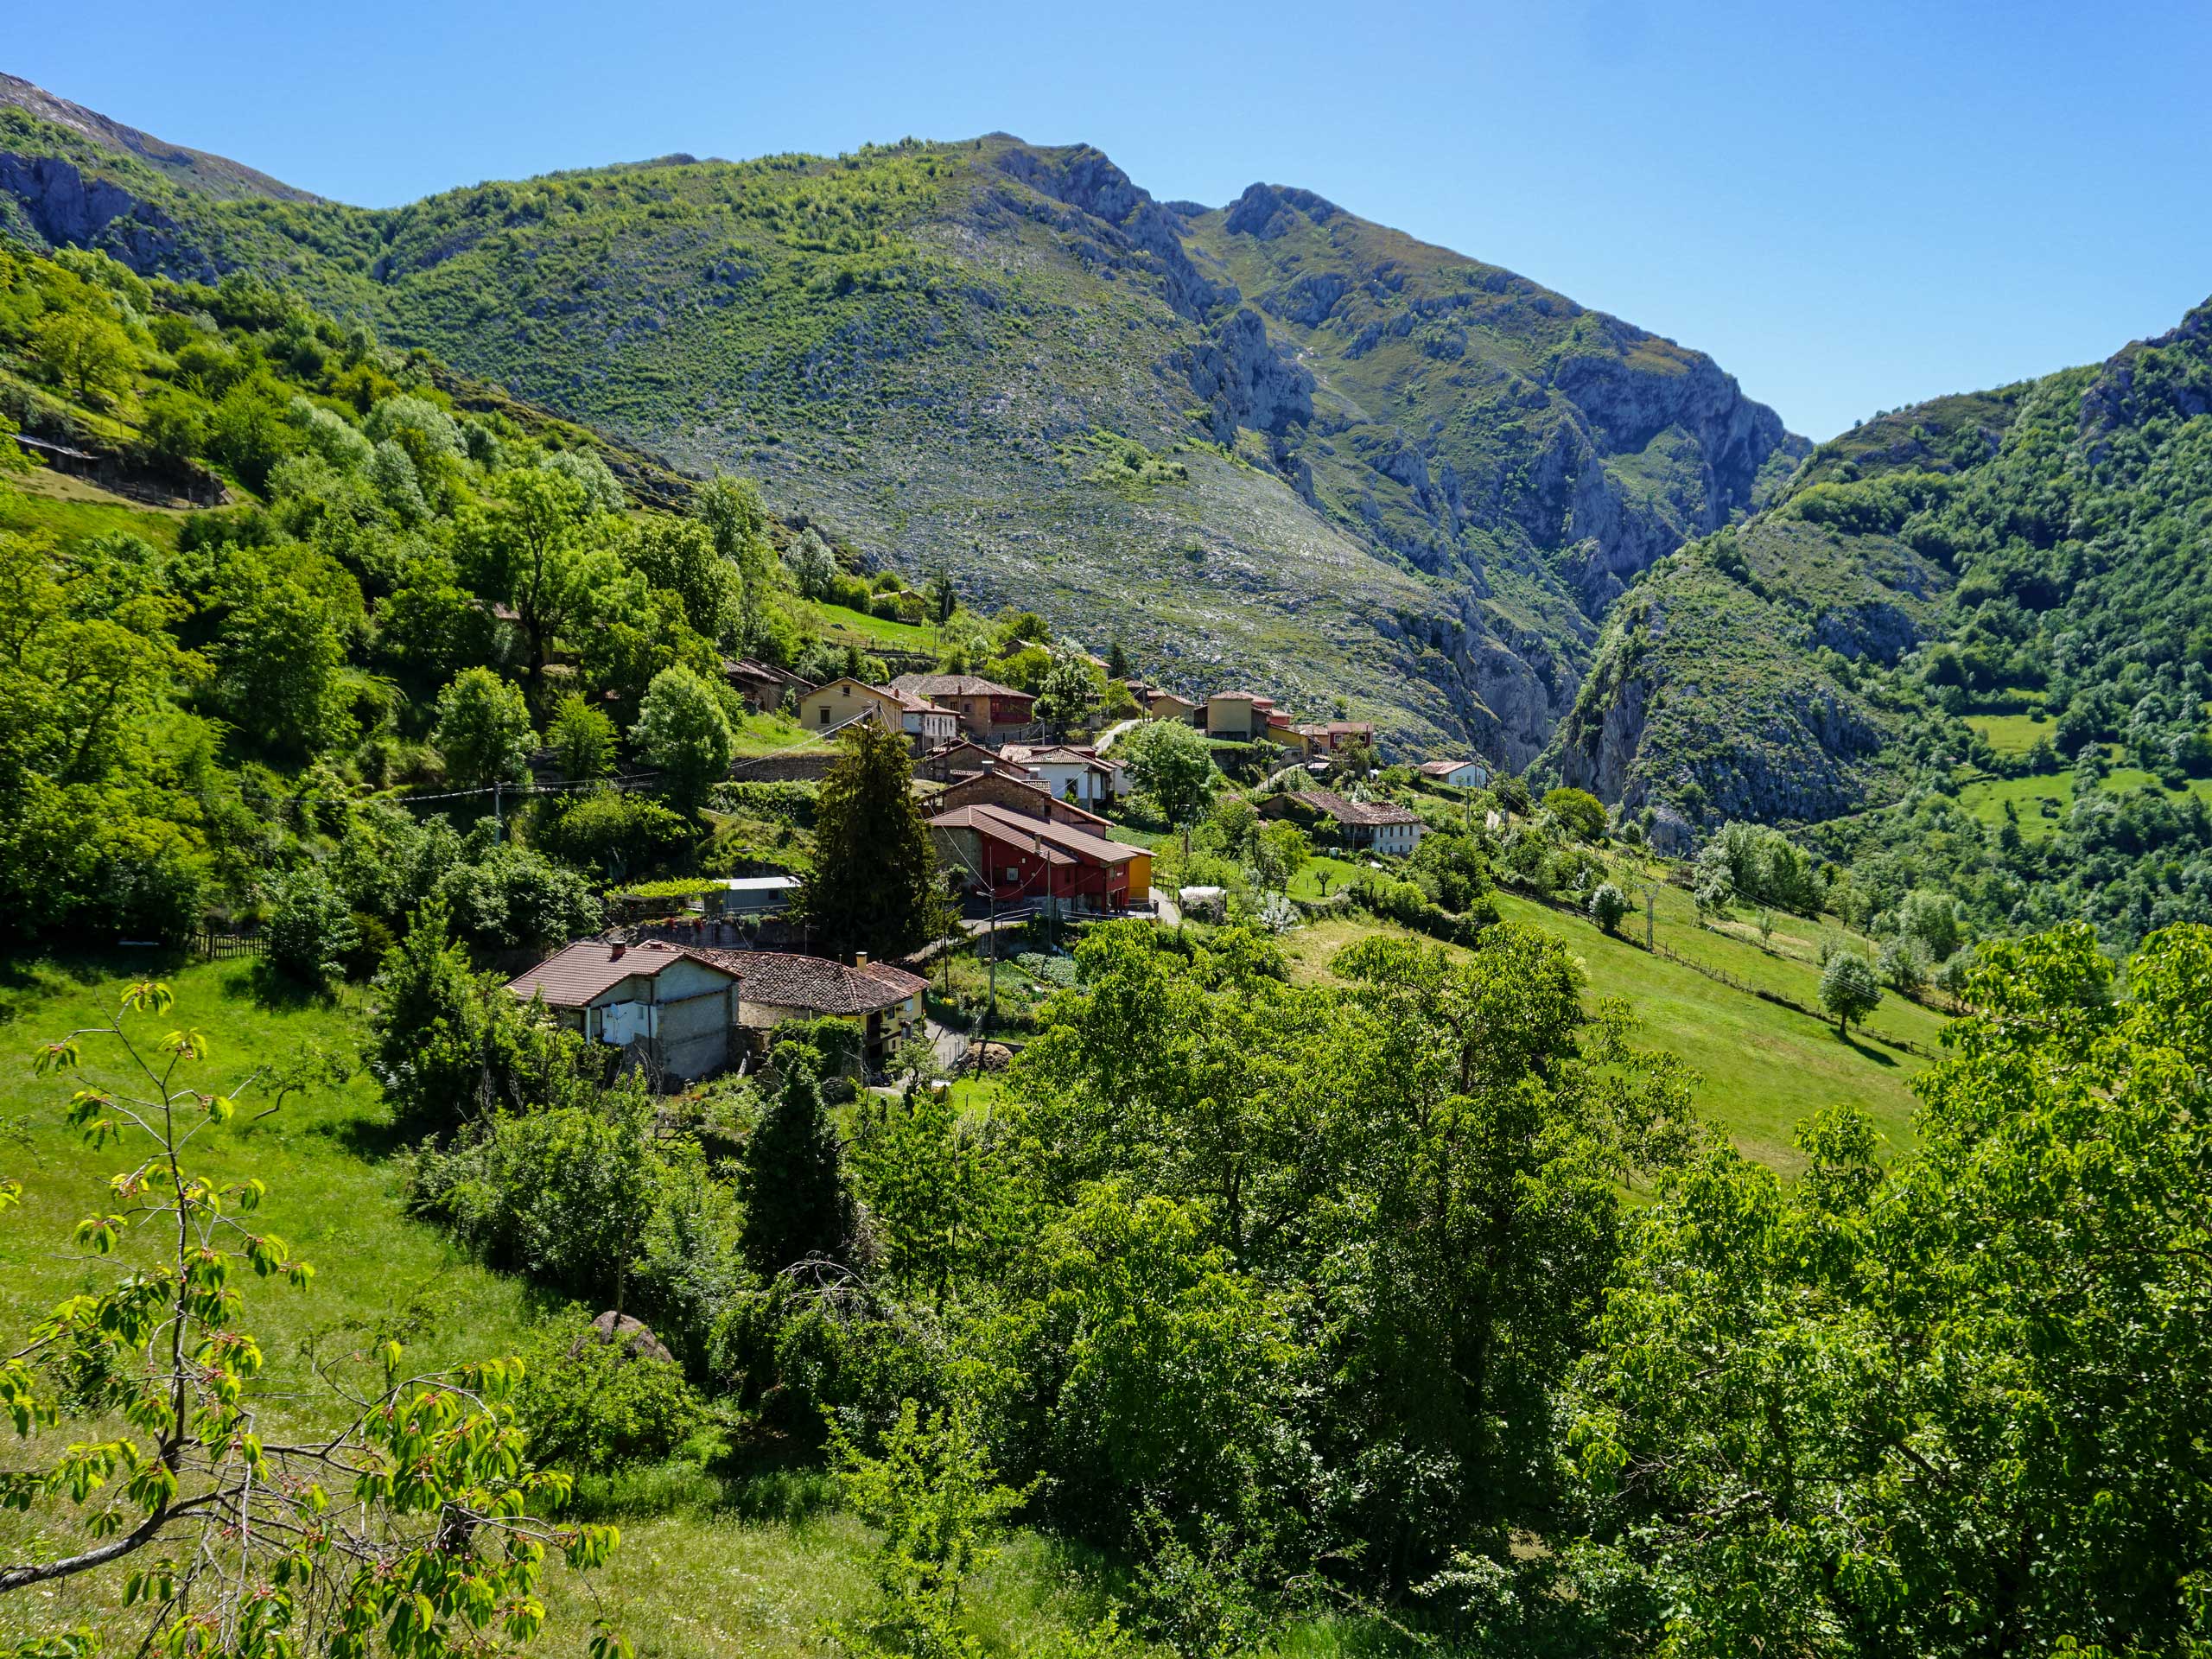 Teverga mountain village hiking in Spain Asturias walking circular lagos